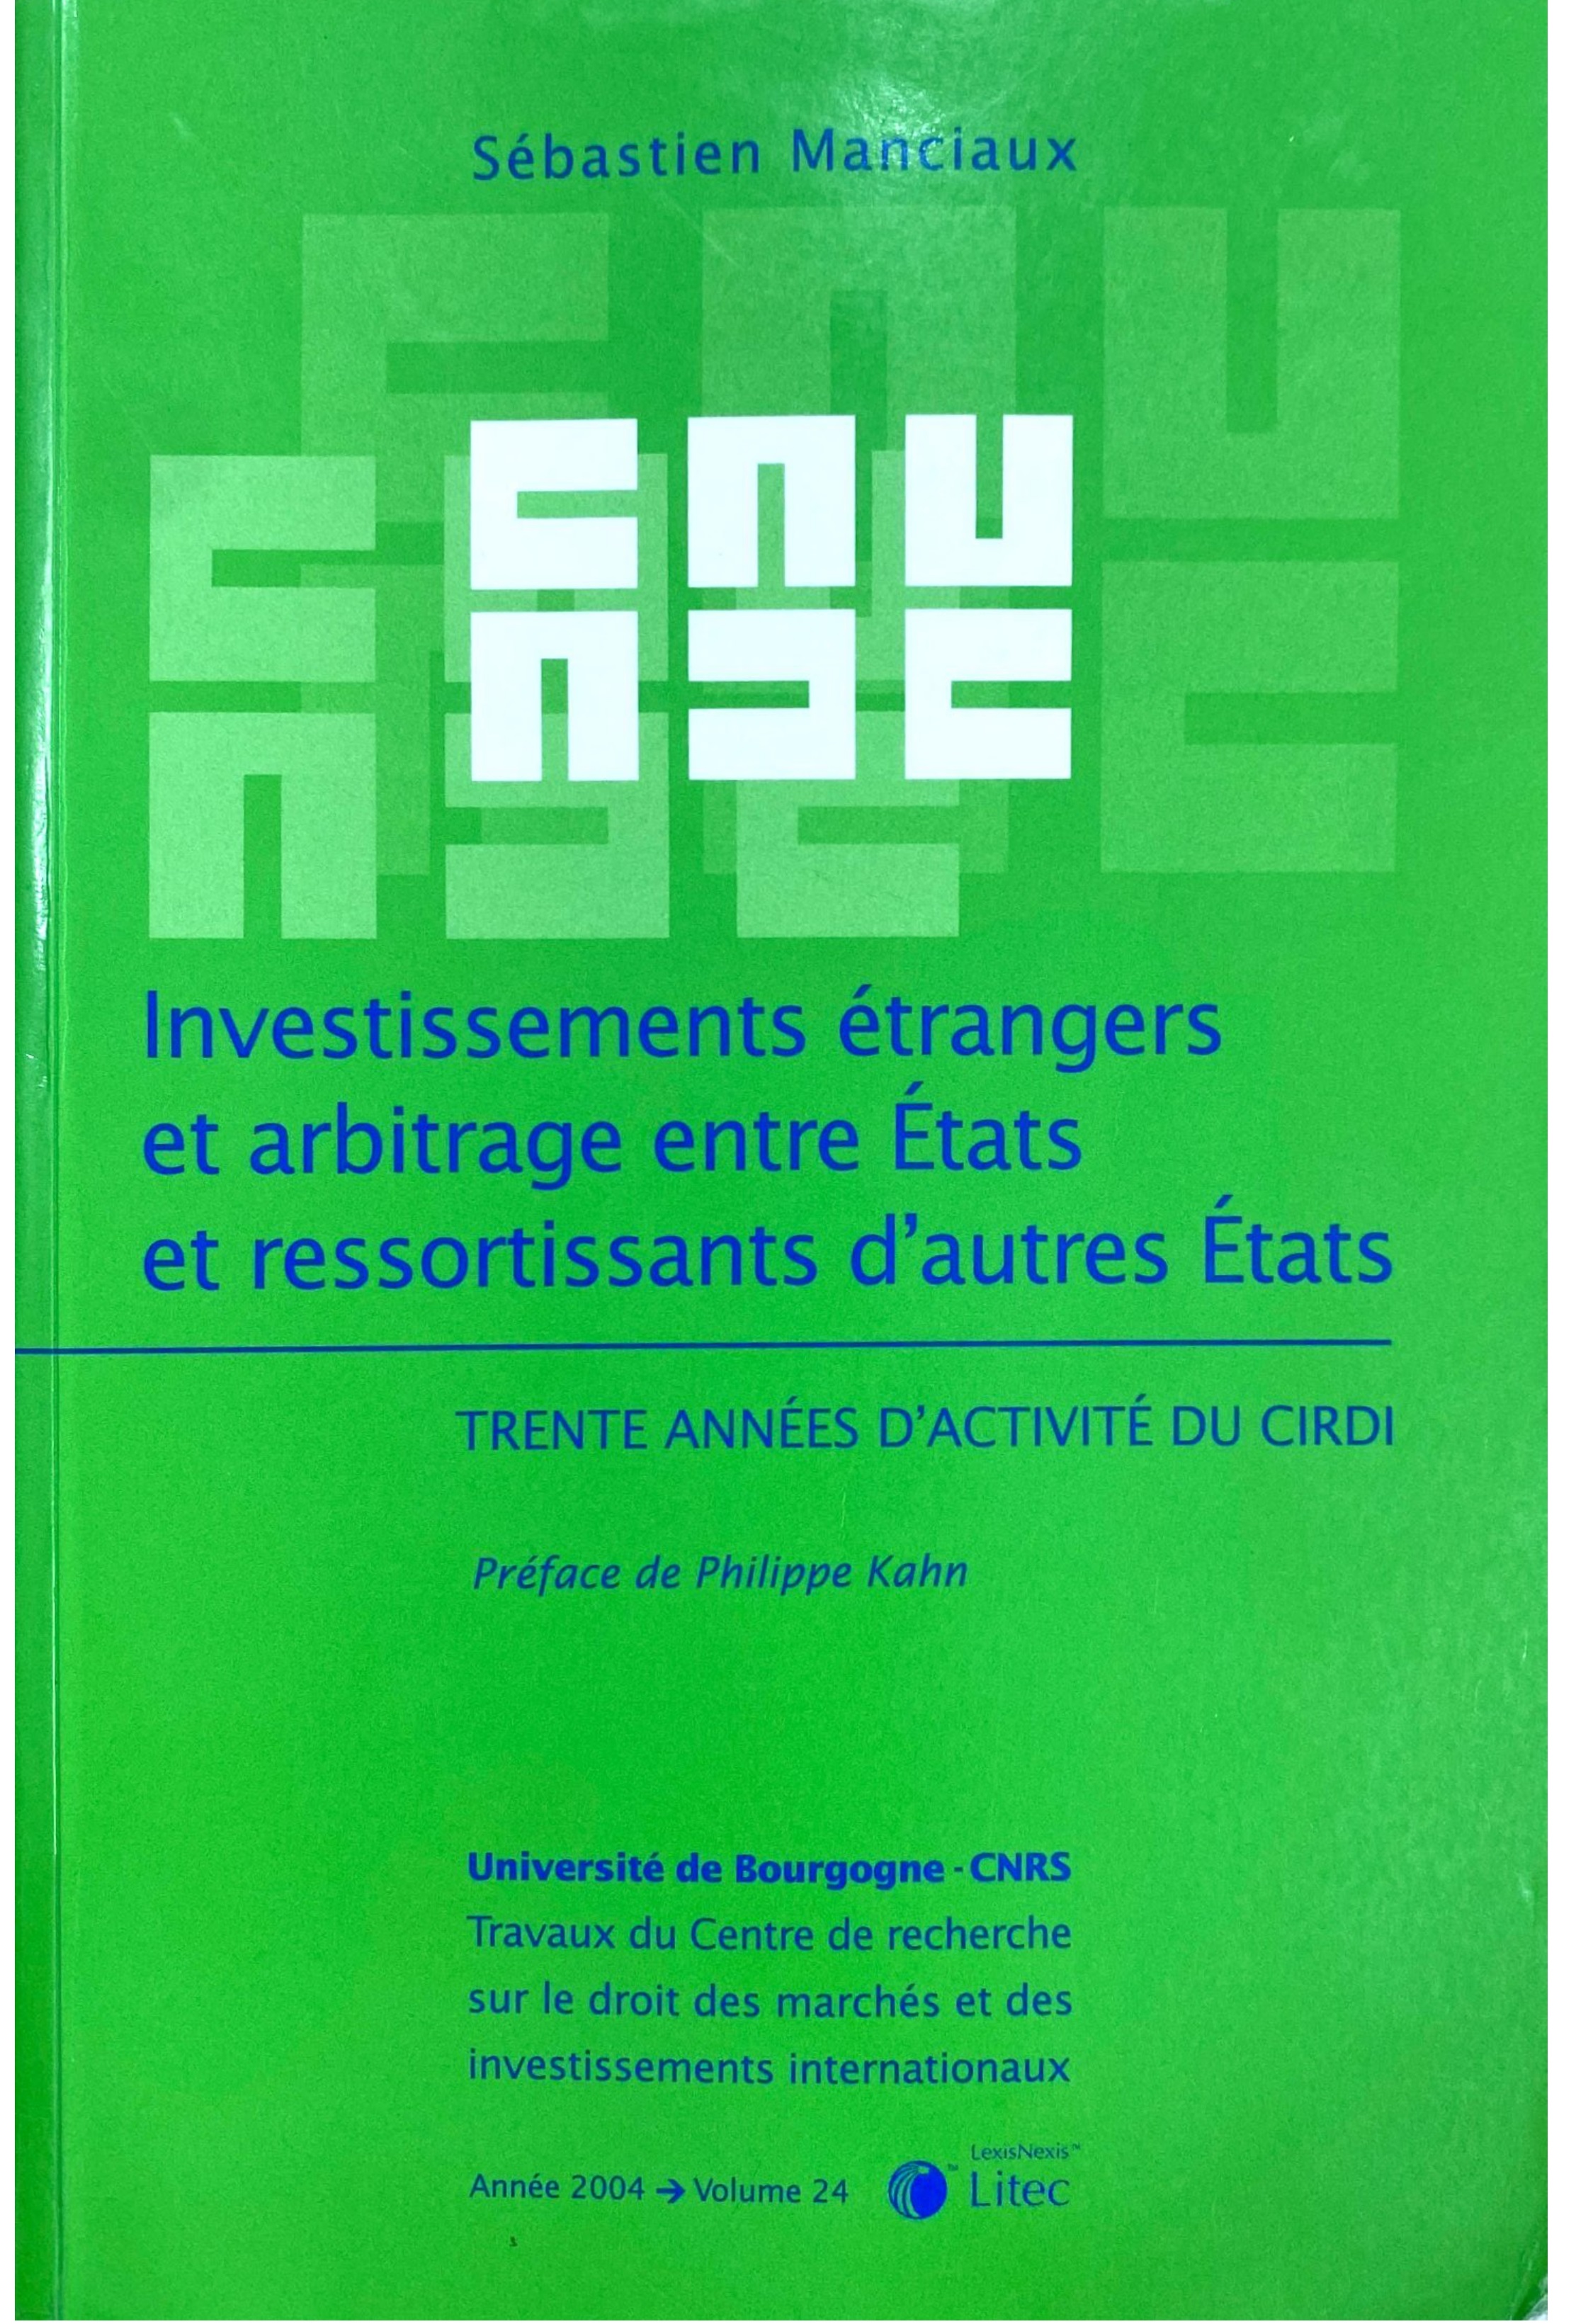 Investissements étrangers et arbitrage entre états, et ressortissants d'autres états